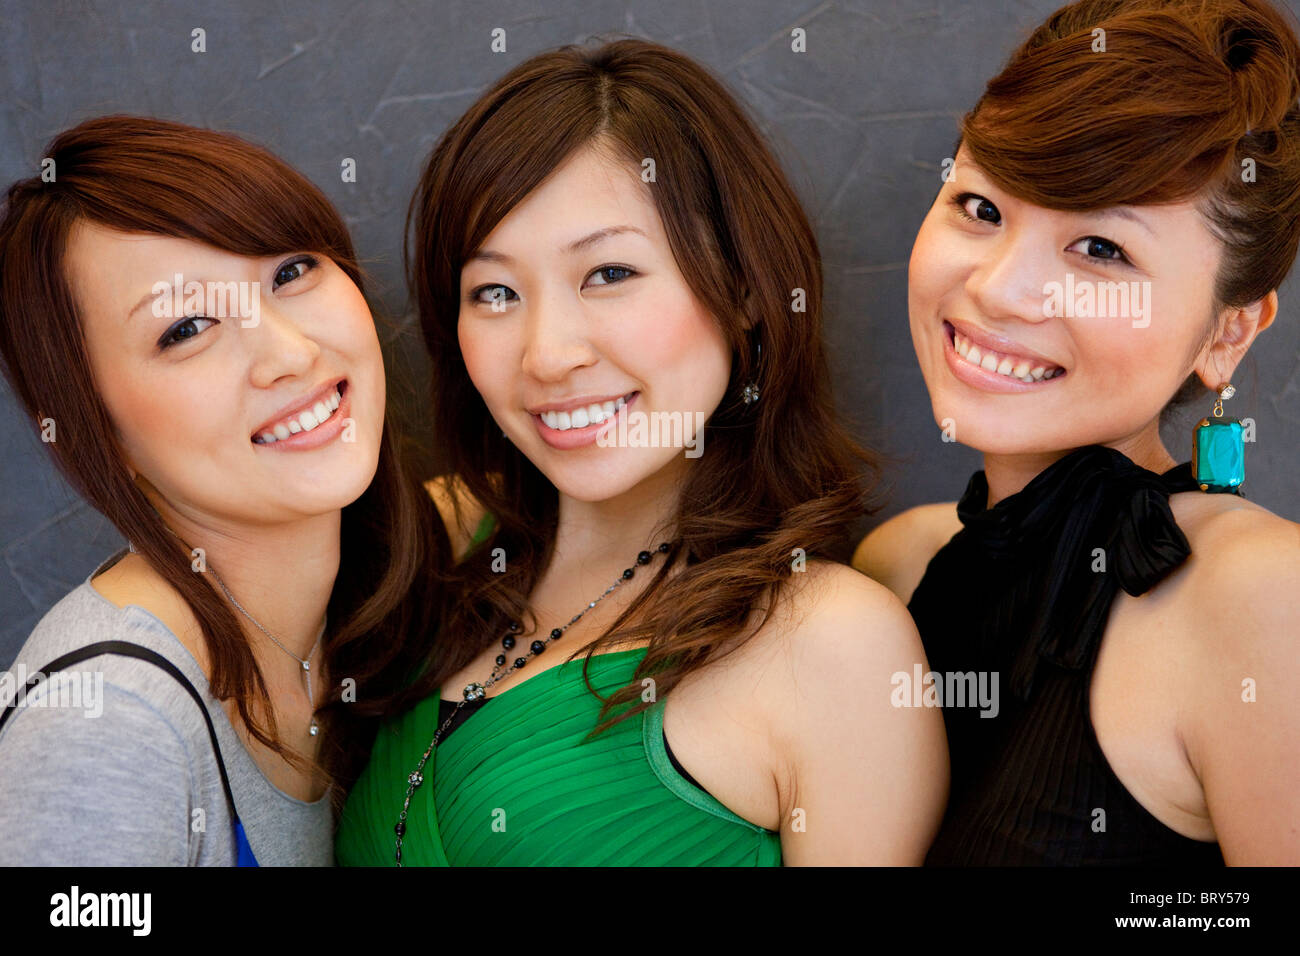 Portrait de trois jeunes femmes, smiling and looking at camera, fond noir Banque D'Images